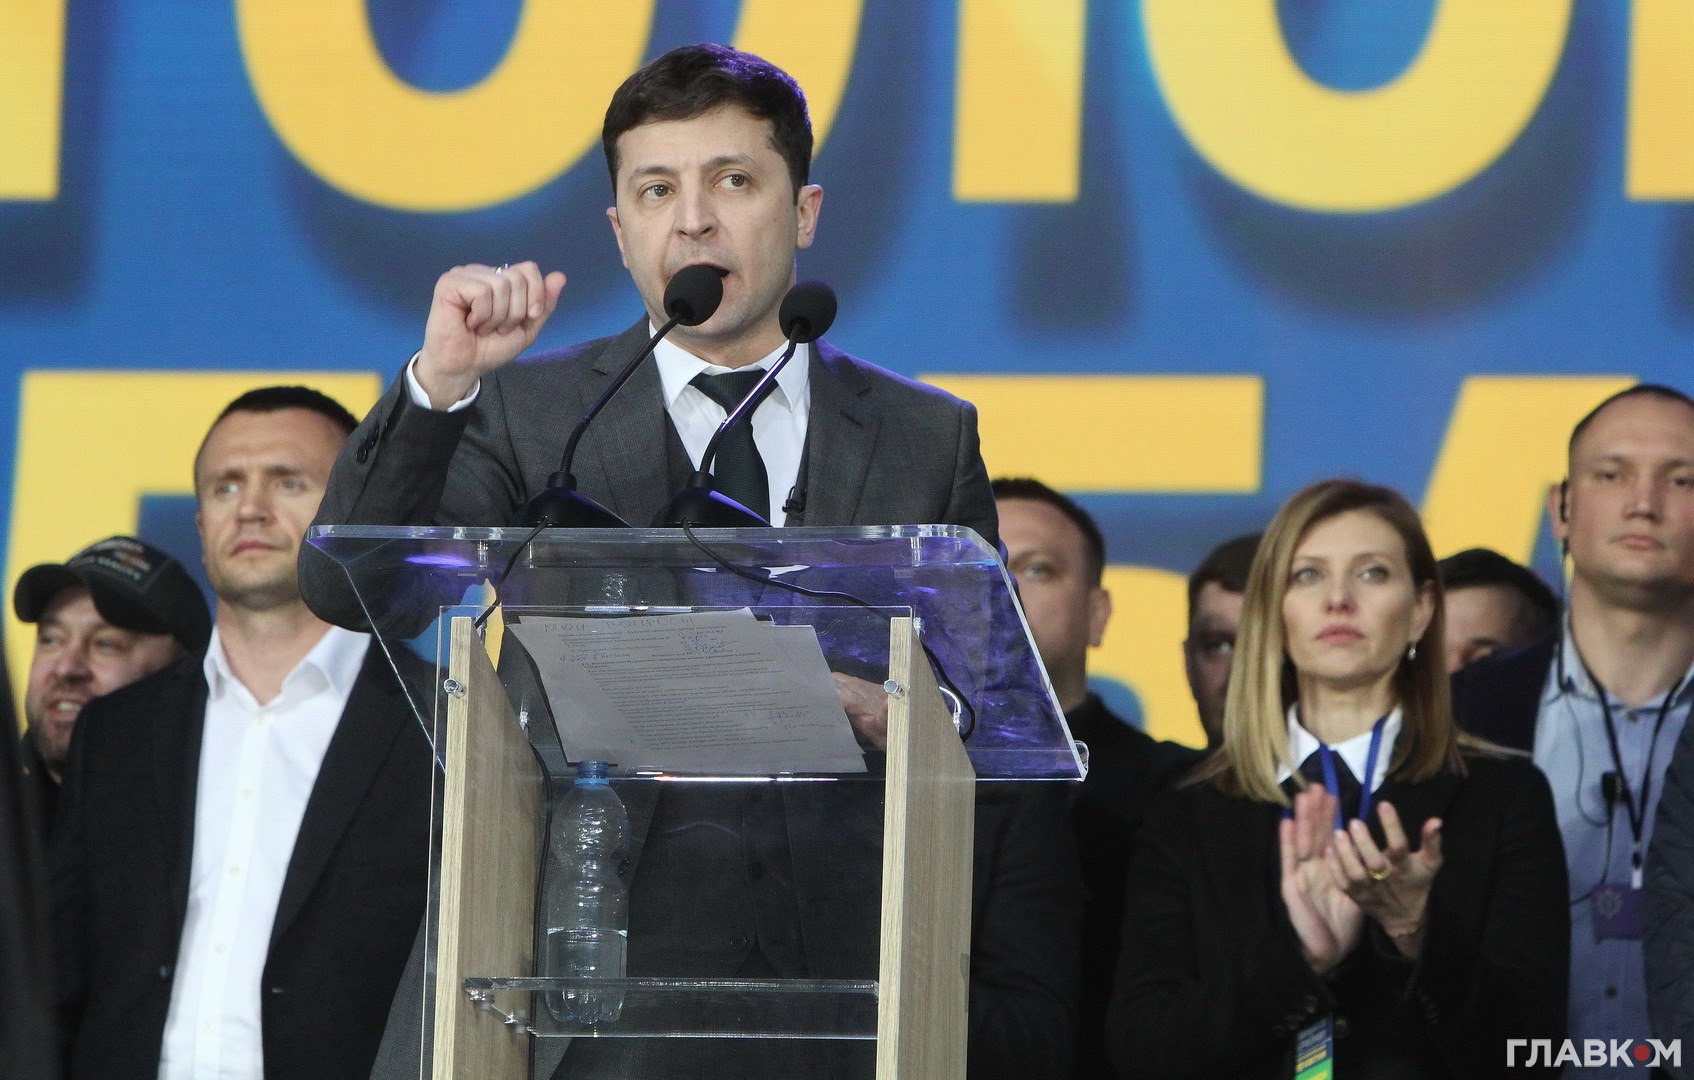 Експерт: Зеленський зробив величезний переворот в Україні